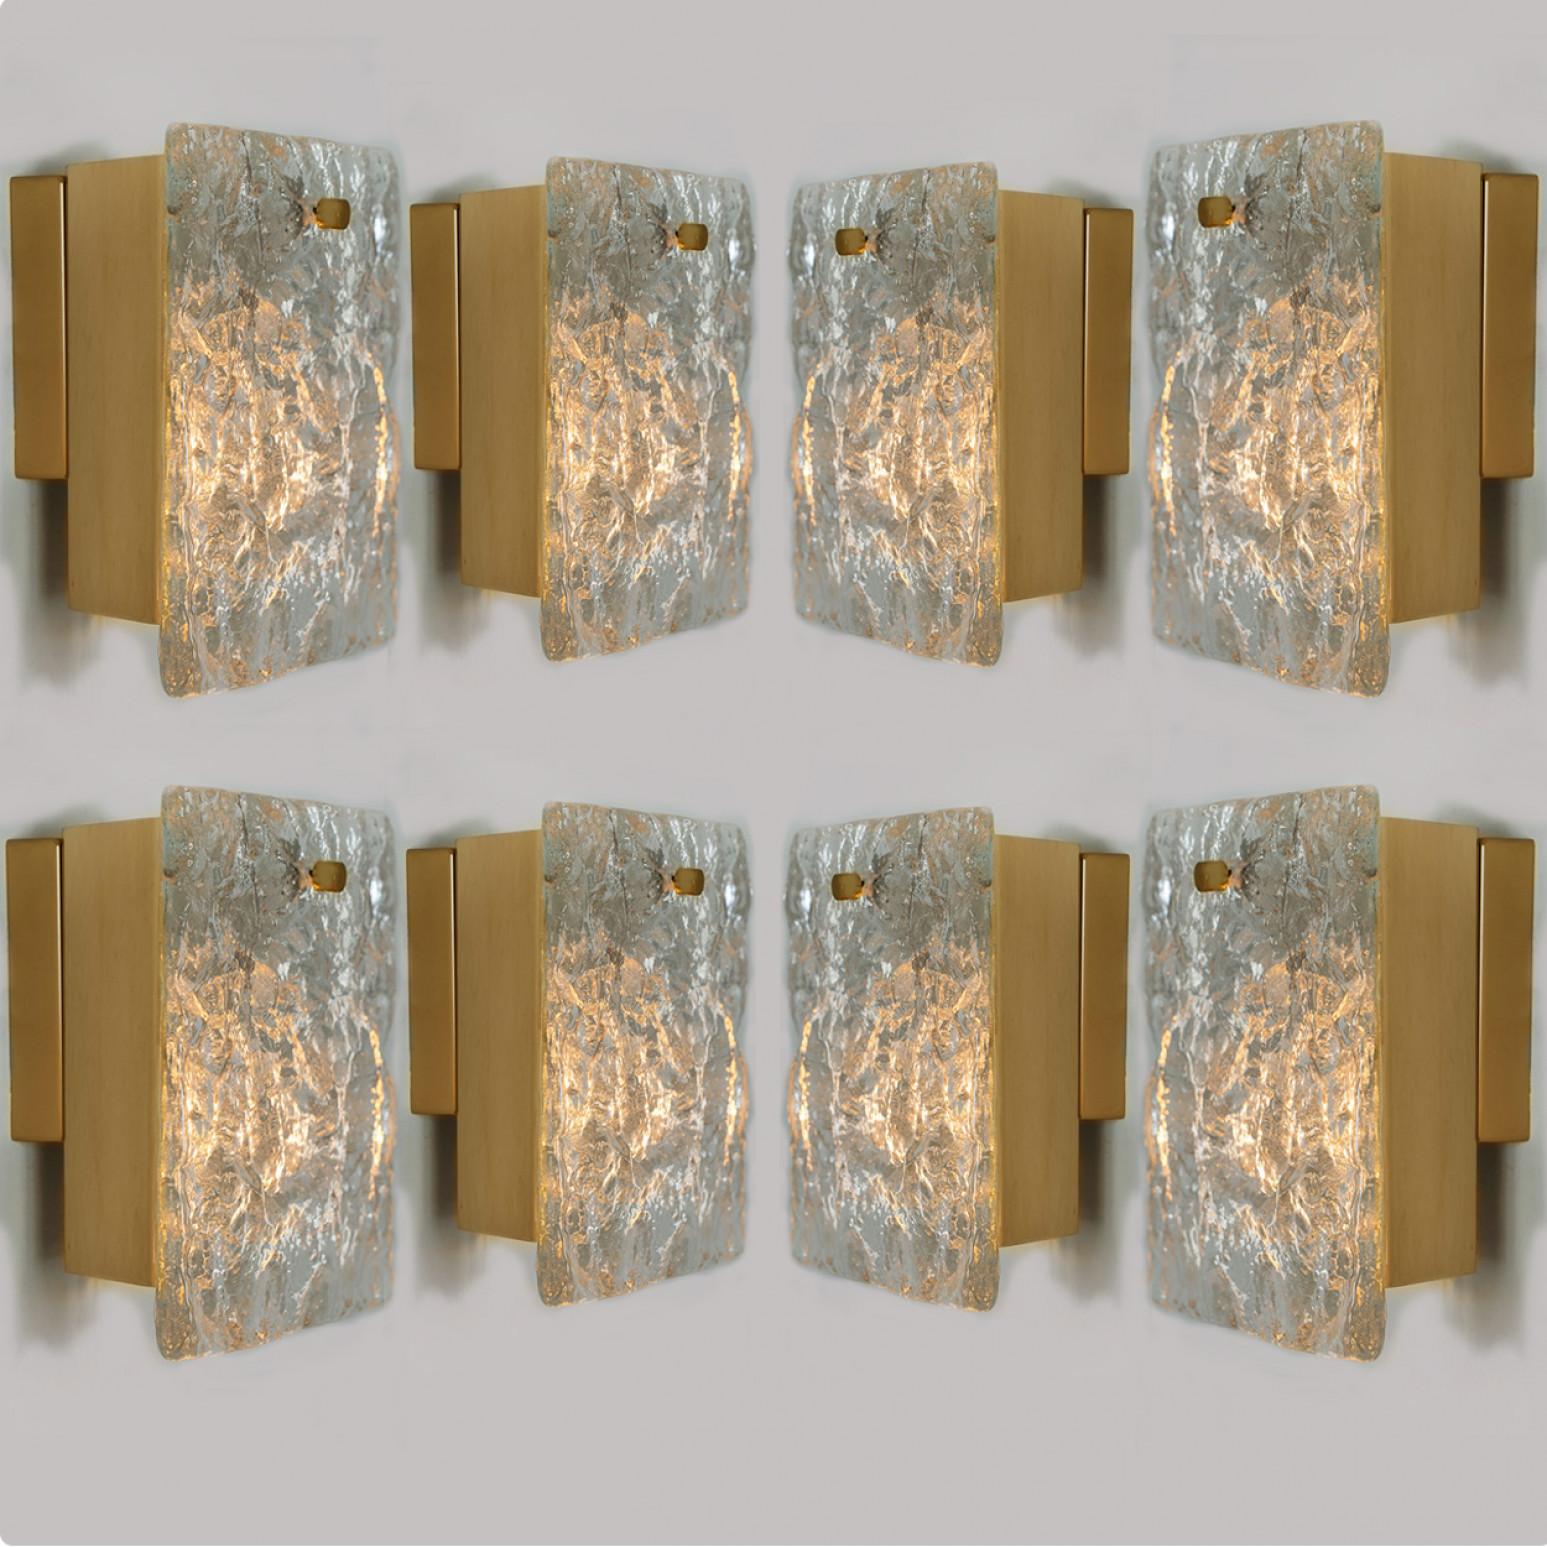 Schöne Wandlampen von J. T. Kalmar, Modell: Karlstein, Wien, um 1960. Mit reliefartigem Kristallglas (Dispersionsglas). Mit einer vermessingten Rückwand. Leuchtet wunderschön. Die Leuchter haben eine Zugschnur (an und aus) an der Unterseite (siehe